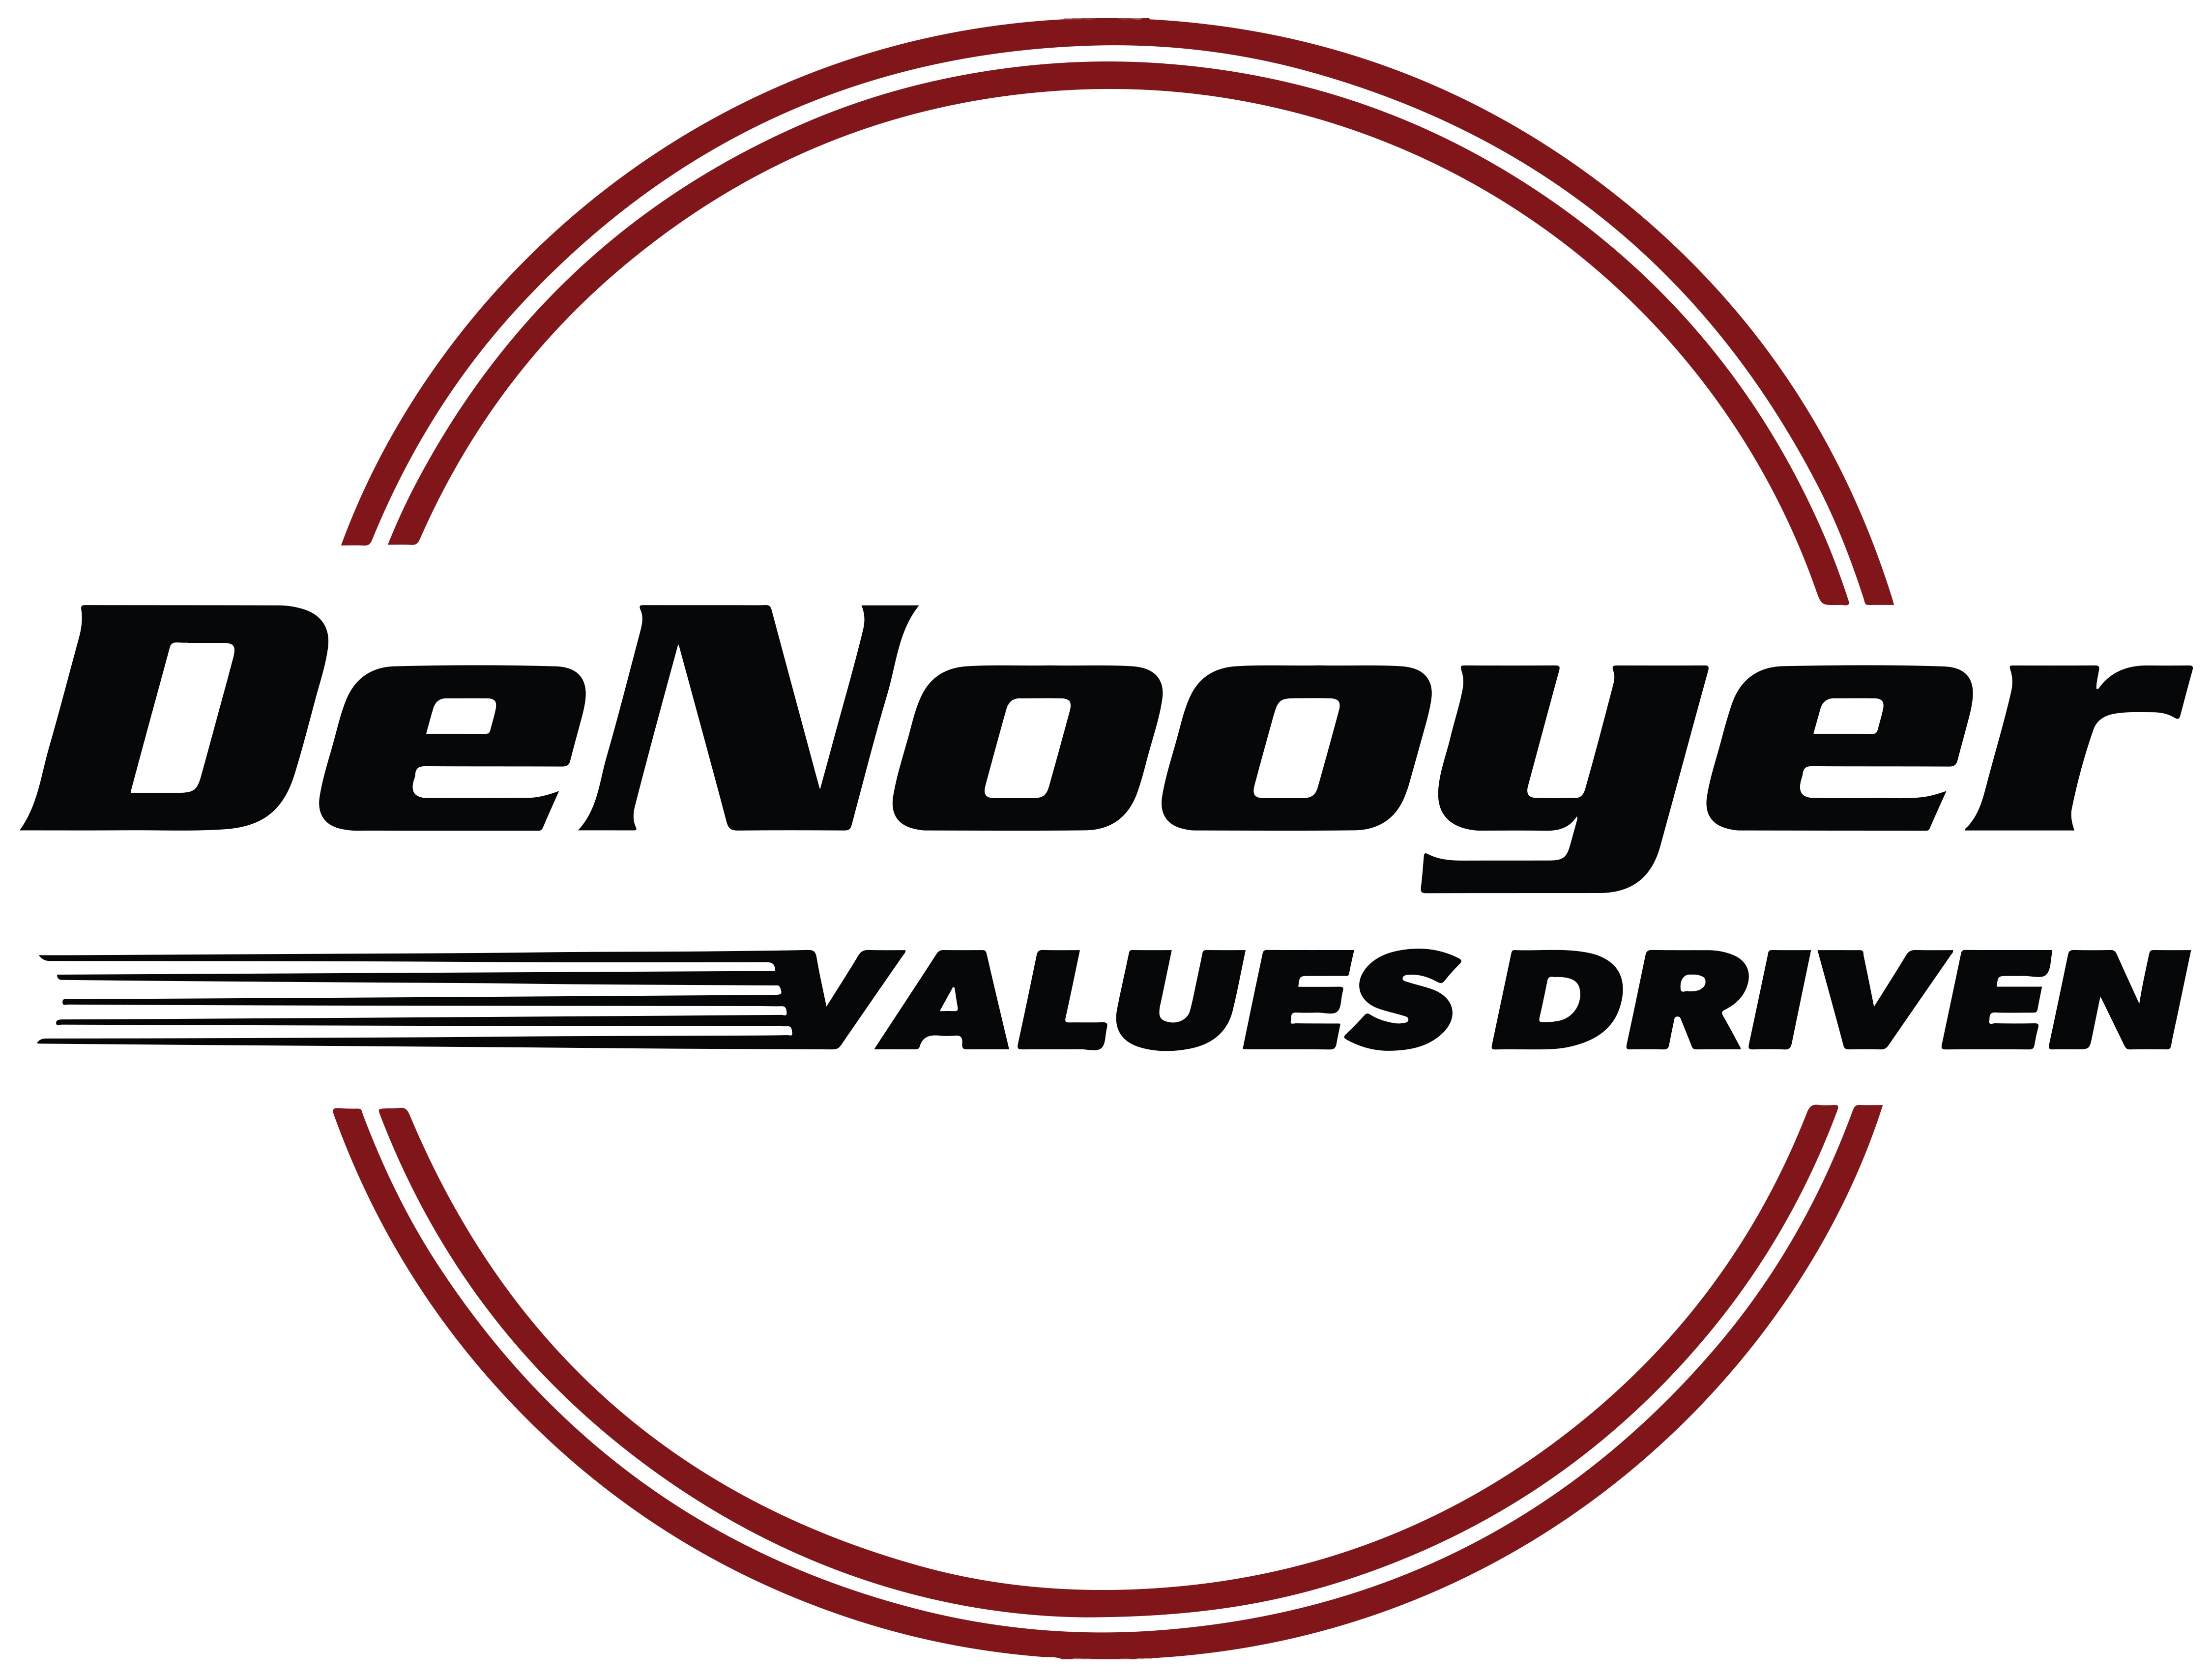 Denooyer Chevrolet Linkedin